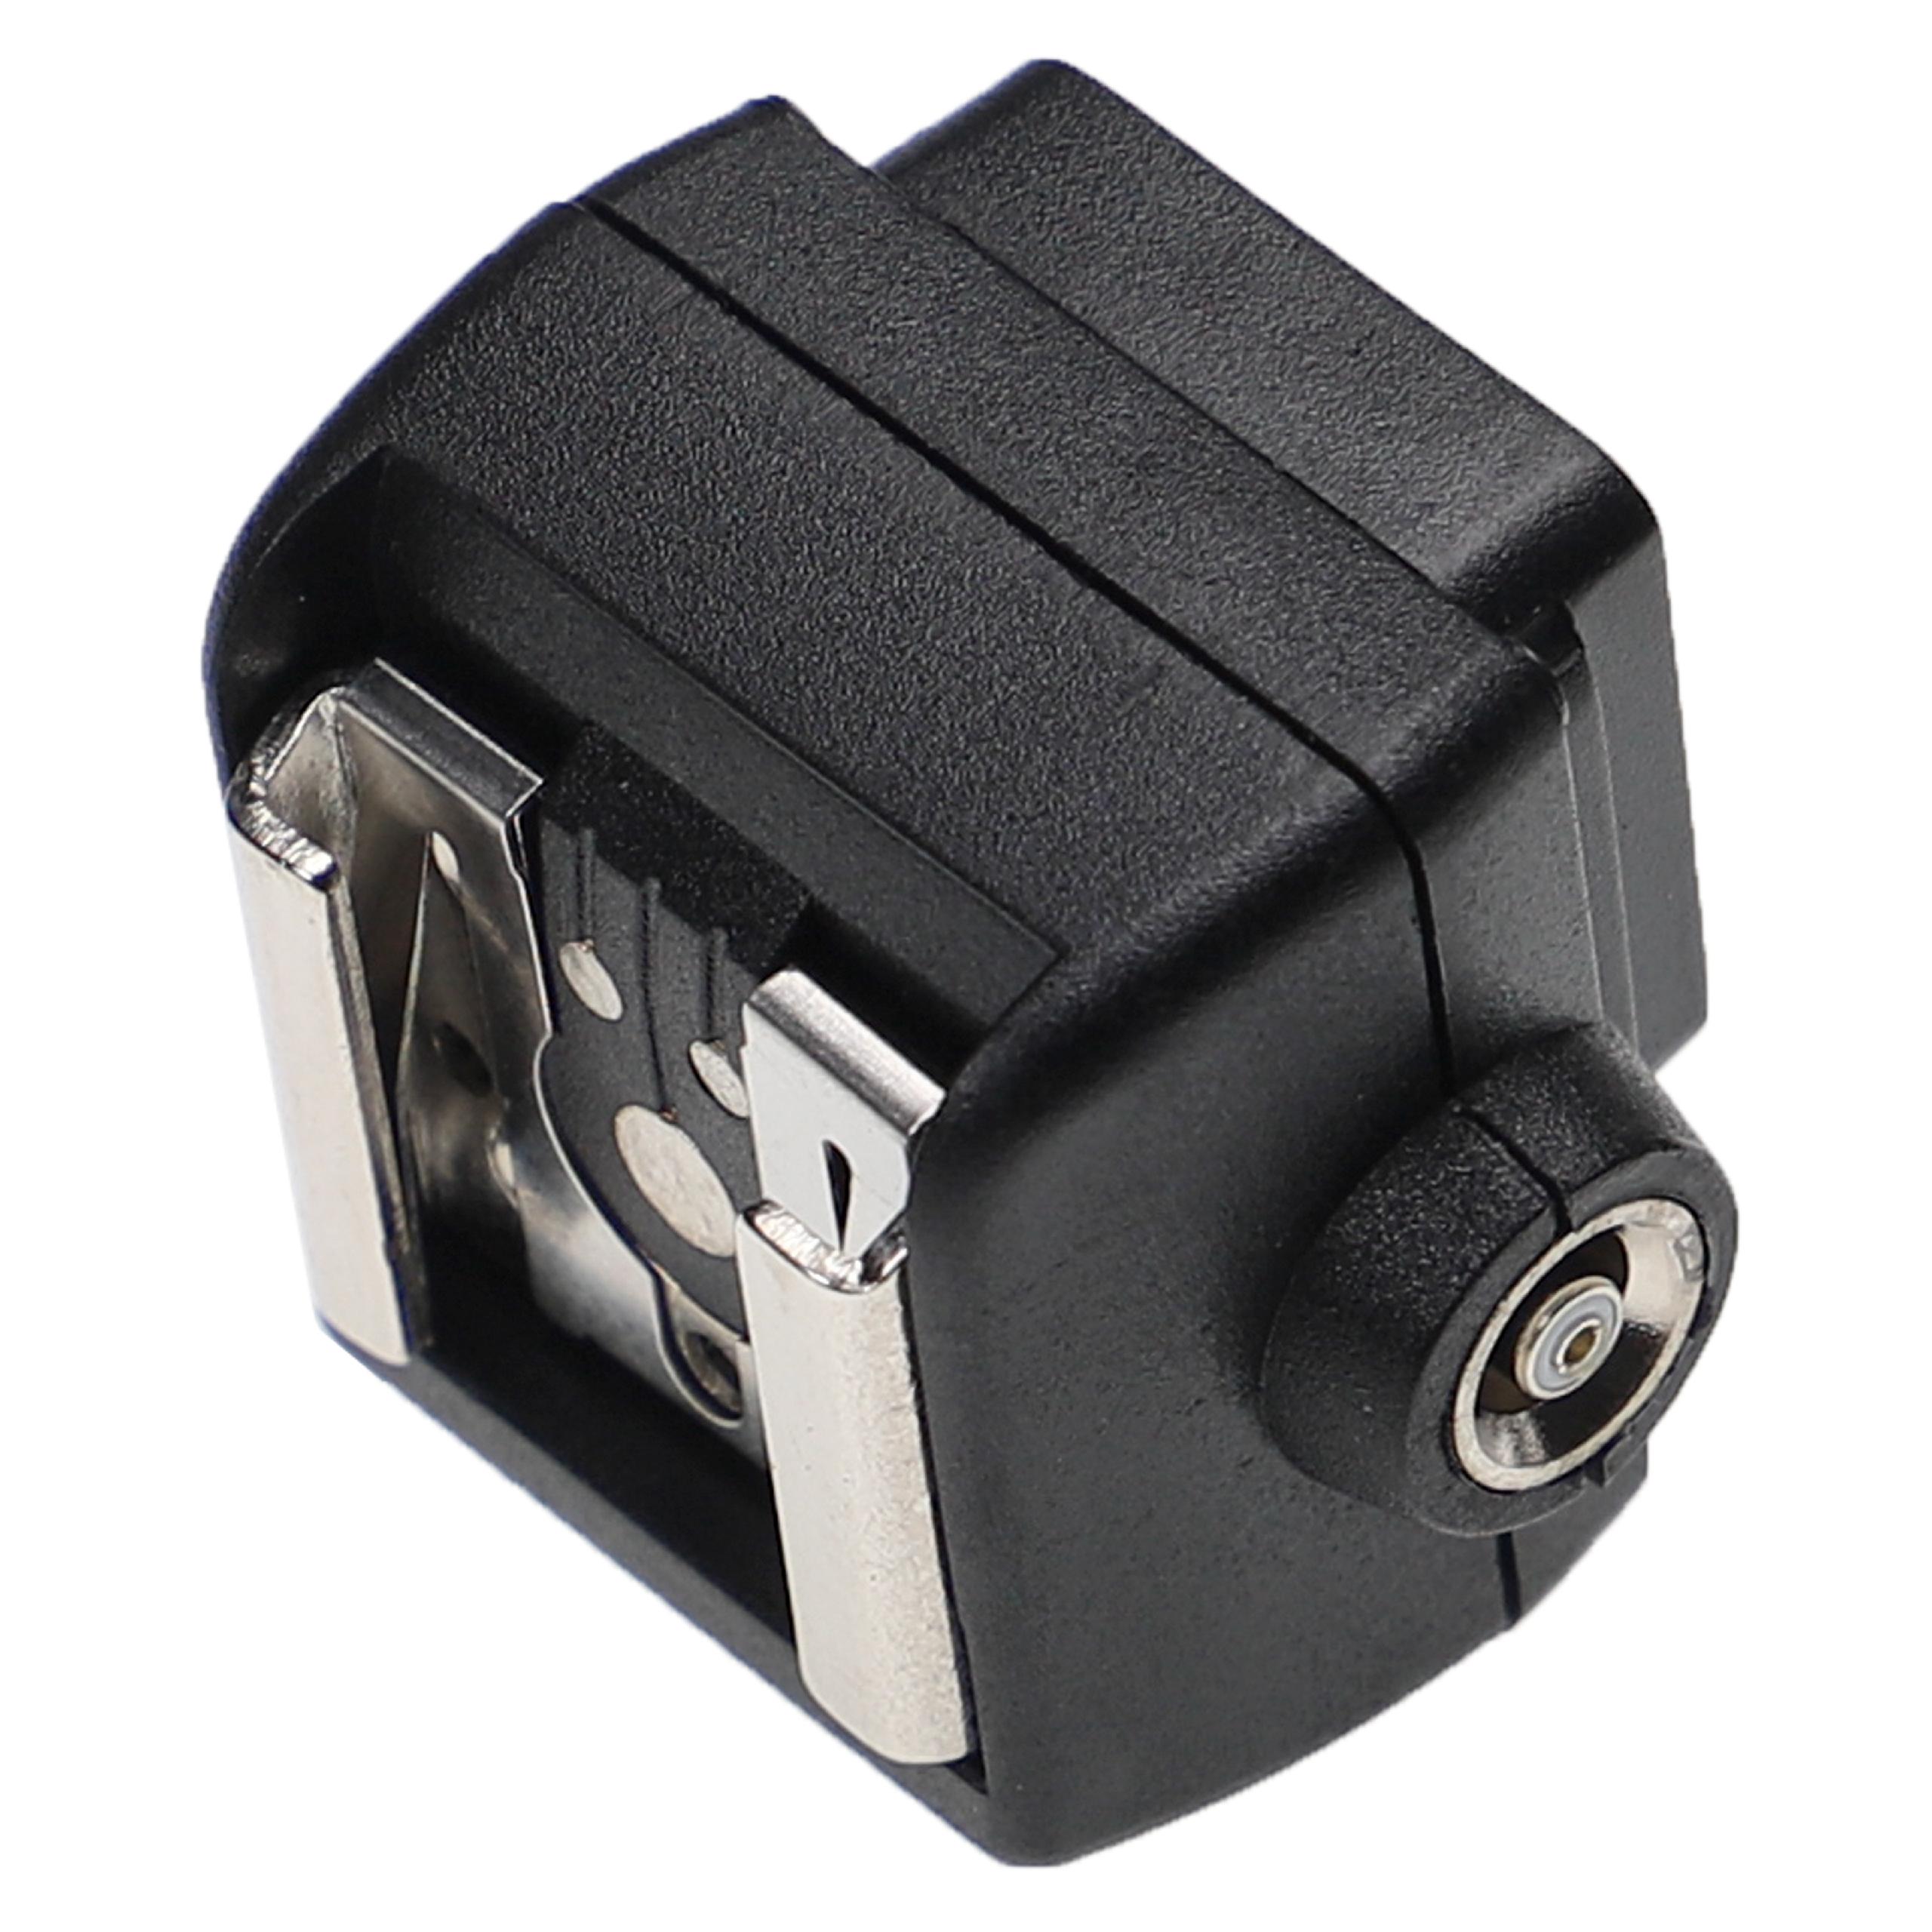 Adaptador de flash para Pentax / Nikon / Sony / Canon / Olympus AF540FGZ cámara, etc. - Adaptador de flash